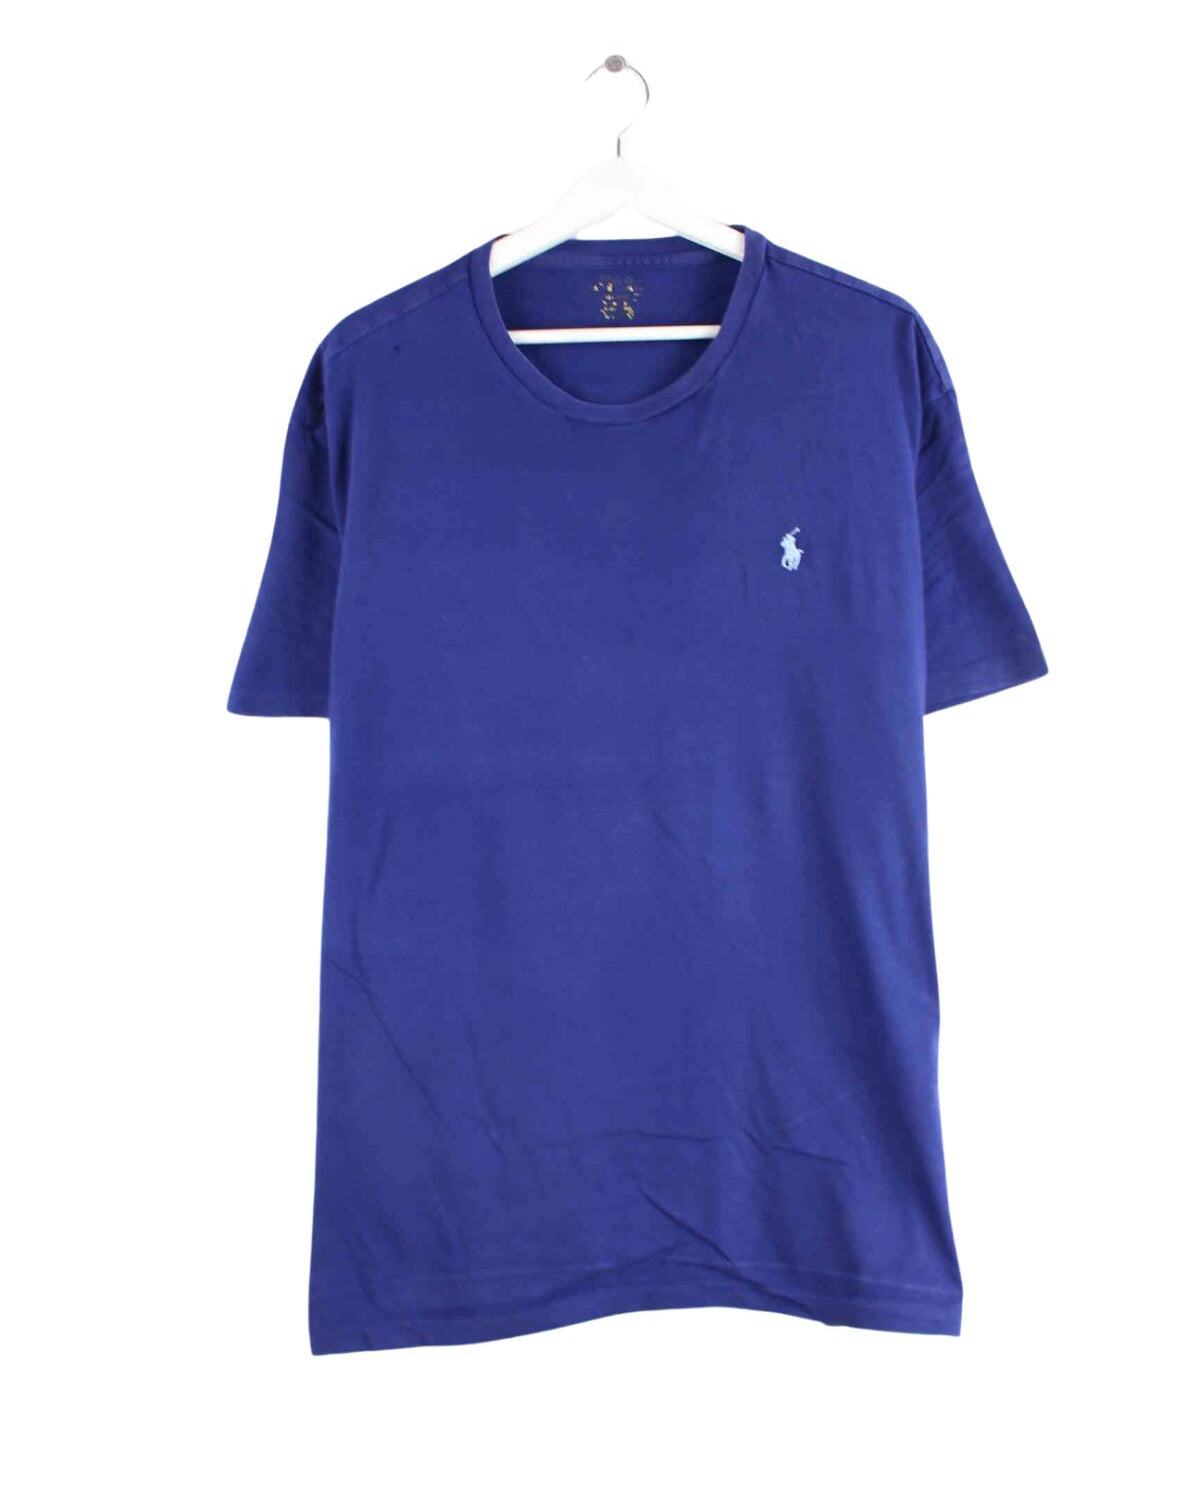 Ralph Lauren Basic T-Shirt Blau L (front image)